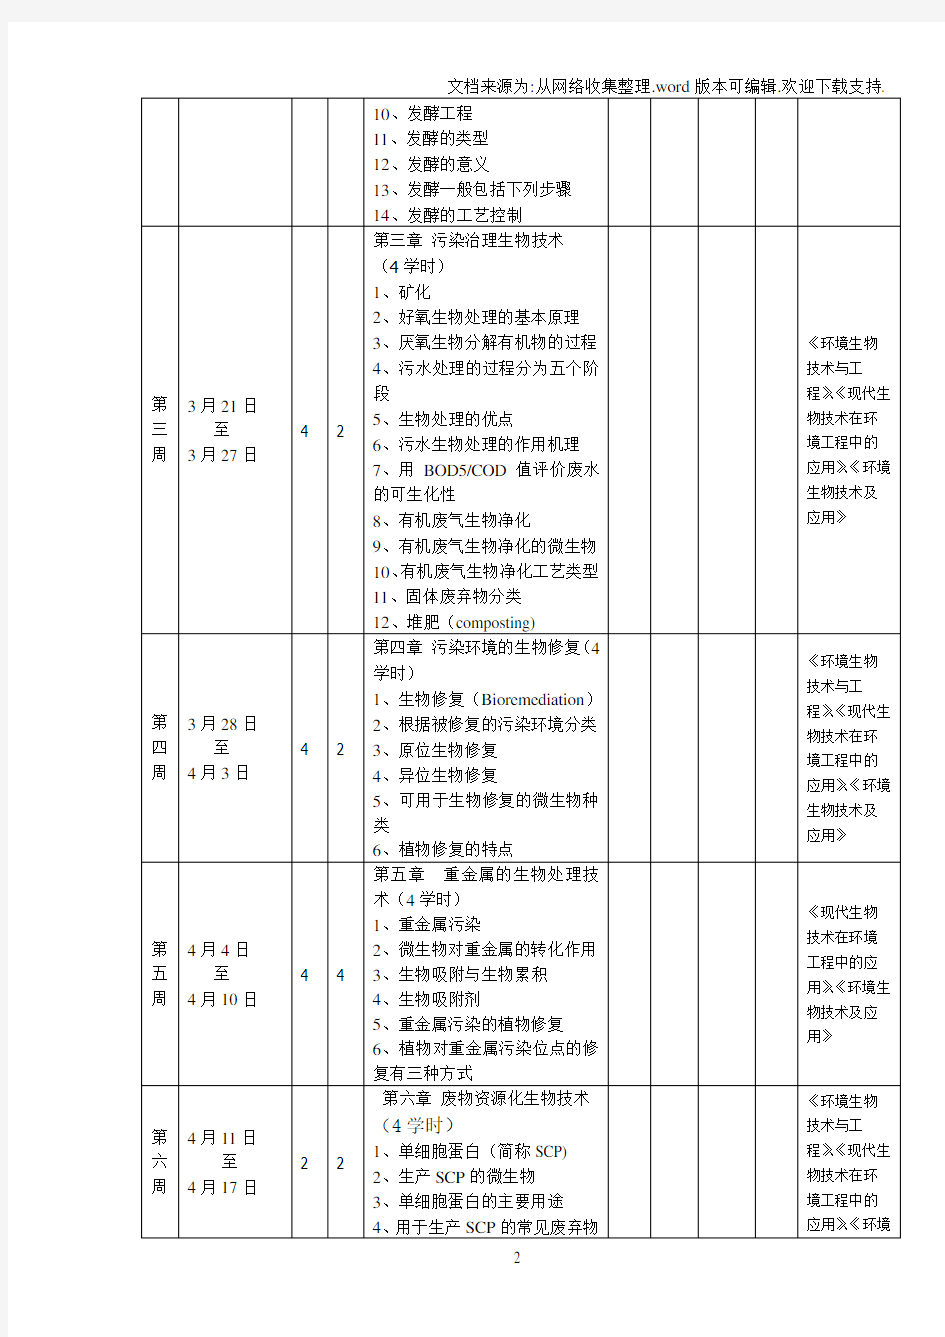 【大学】青岛科技大学教学日历